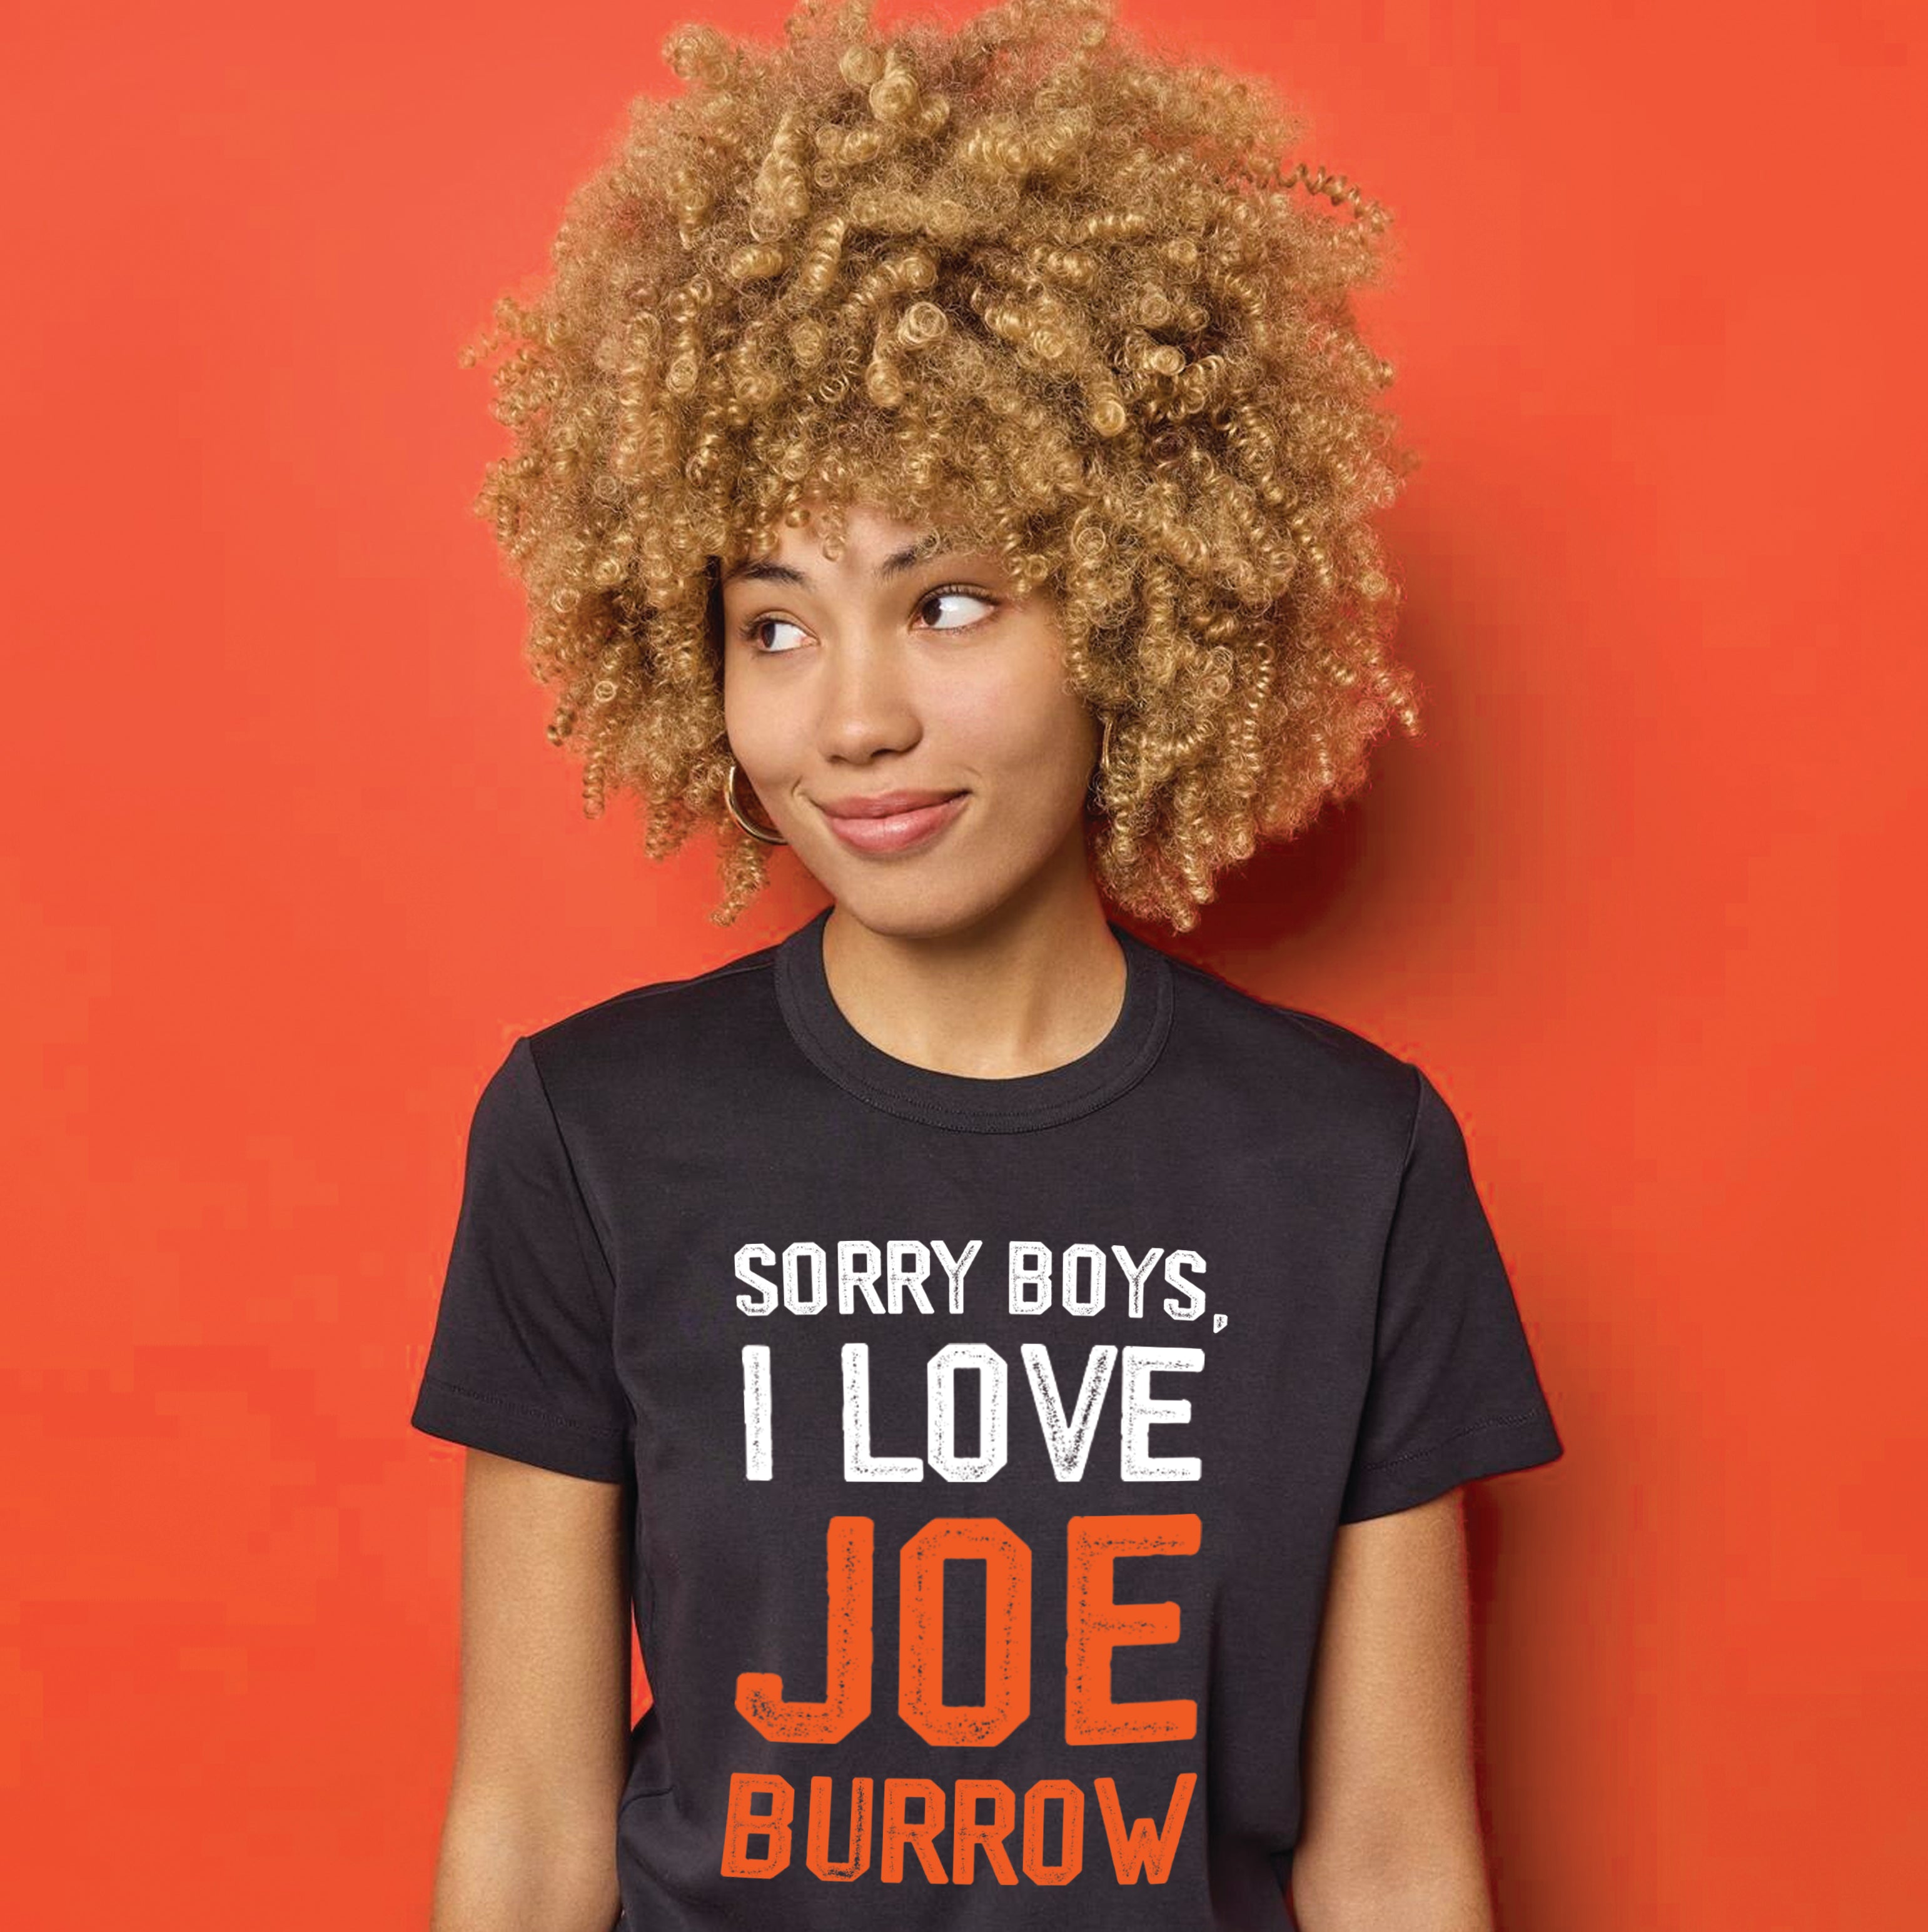 joe burrow shirt